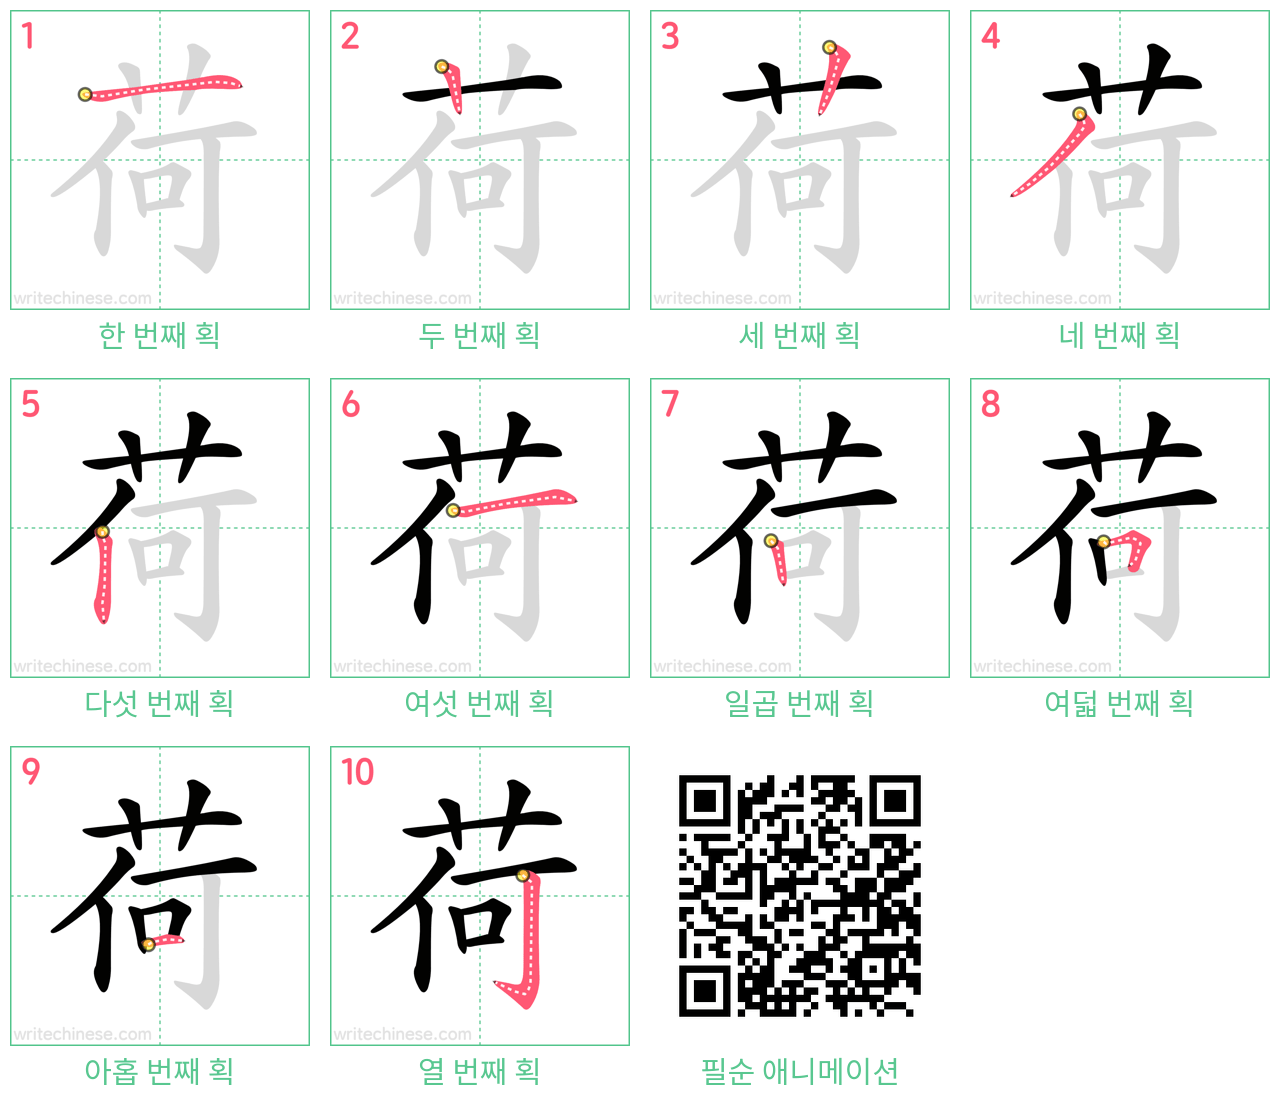 荷 step-by-step stroke order diagrams